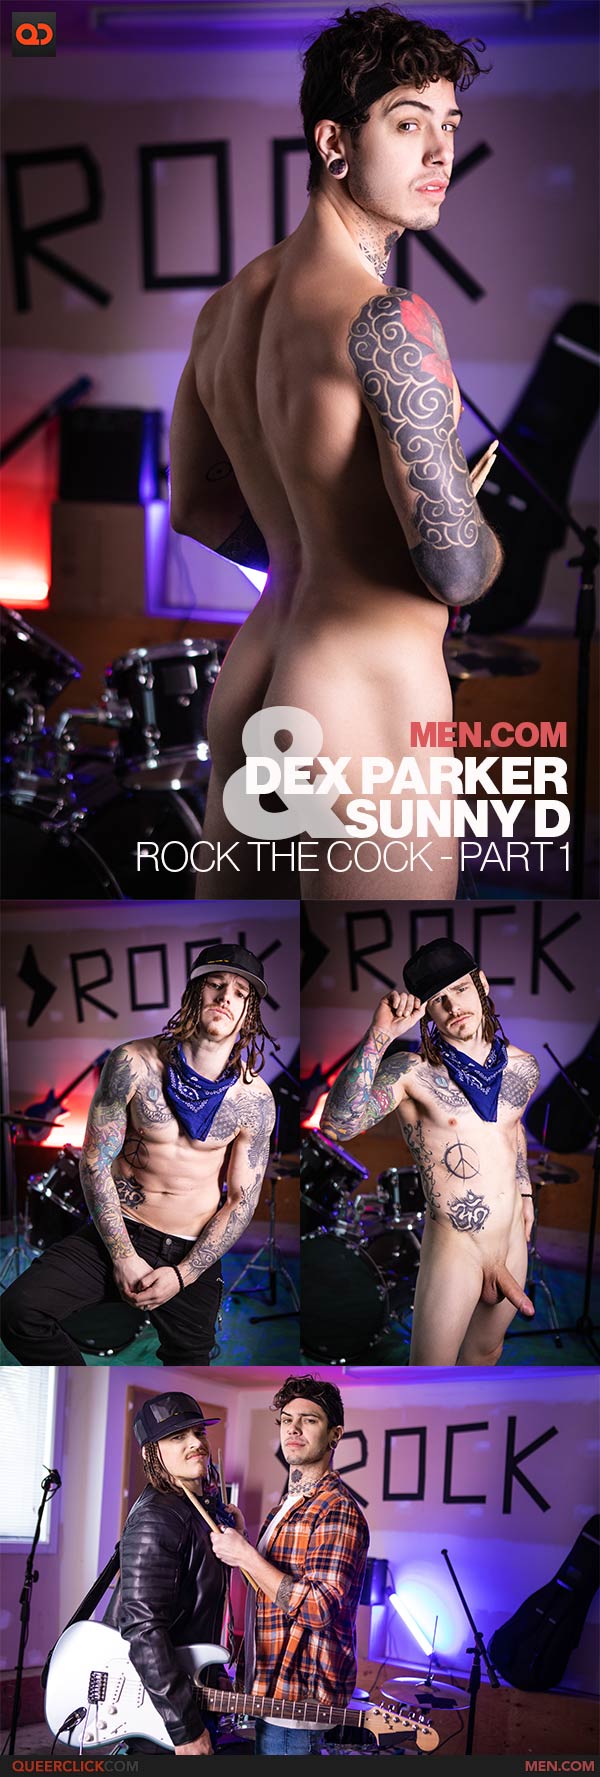 Men.com: Dex Parker and Sunny D